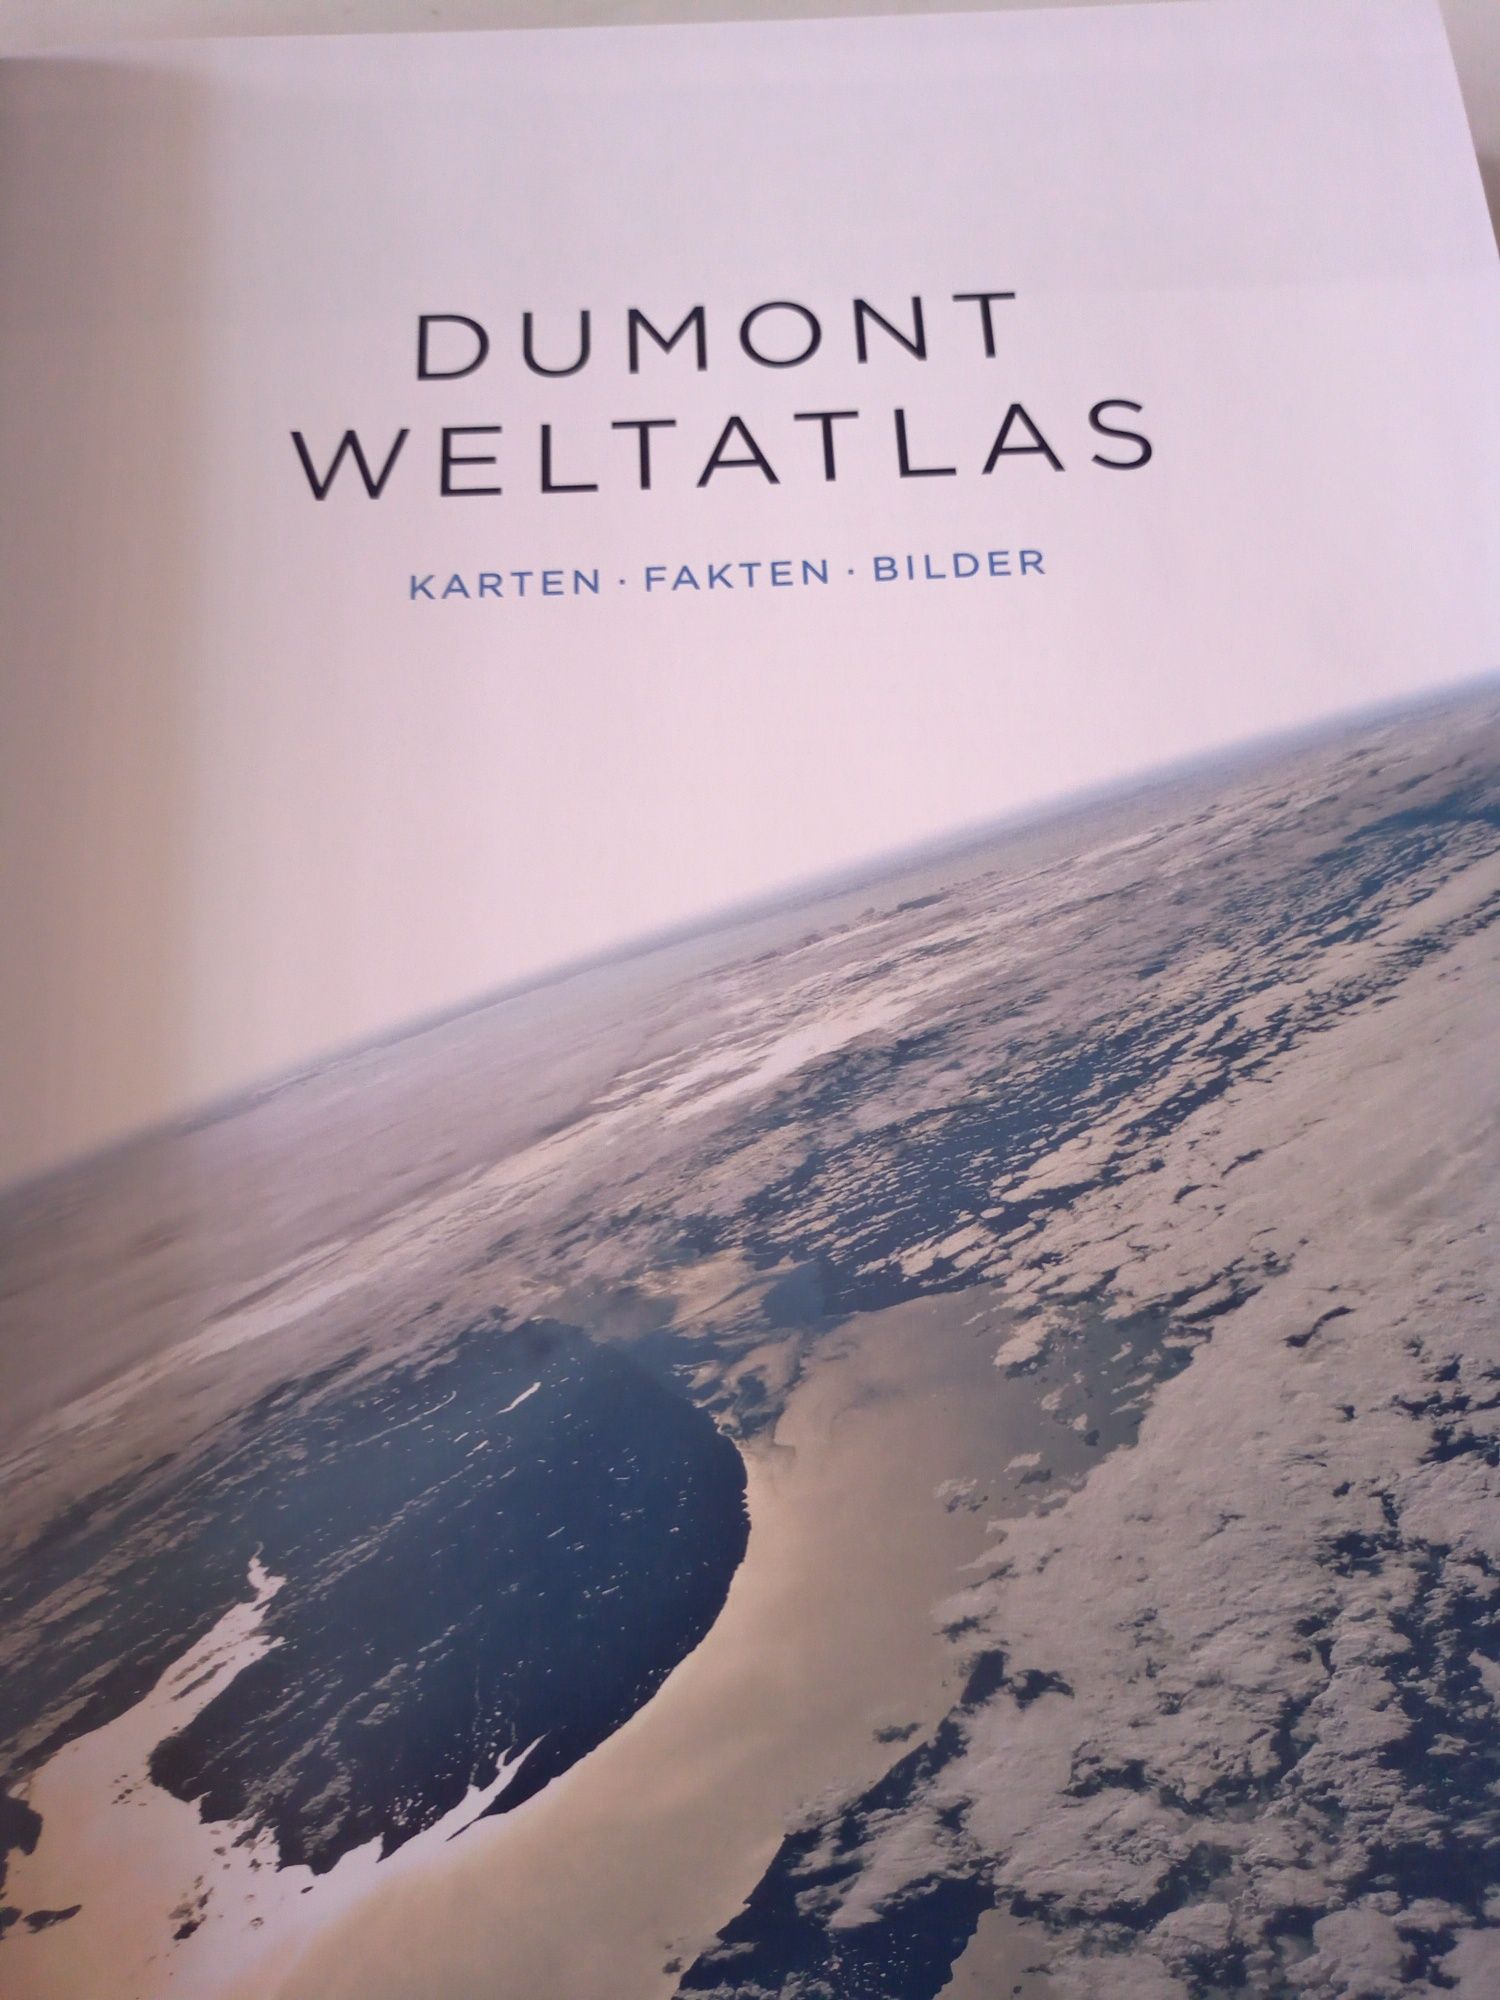 DuMont Weltatlas: Karten - Fakten - Bilder niemiecki atlas